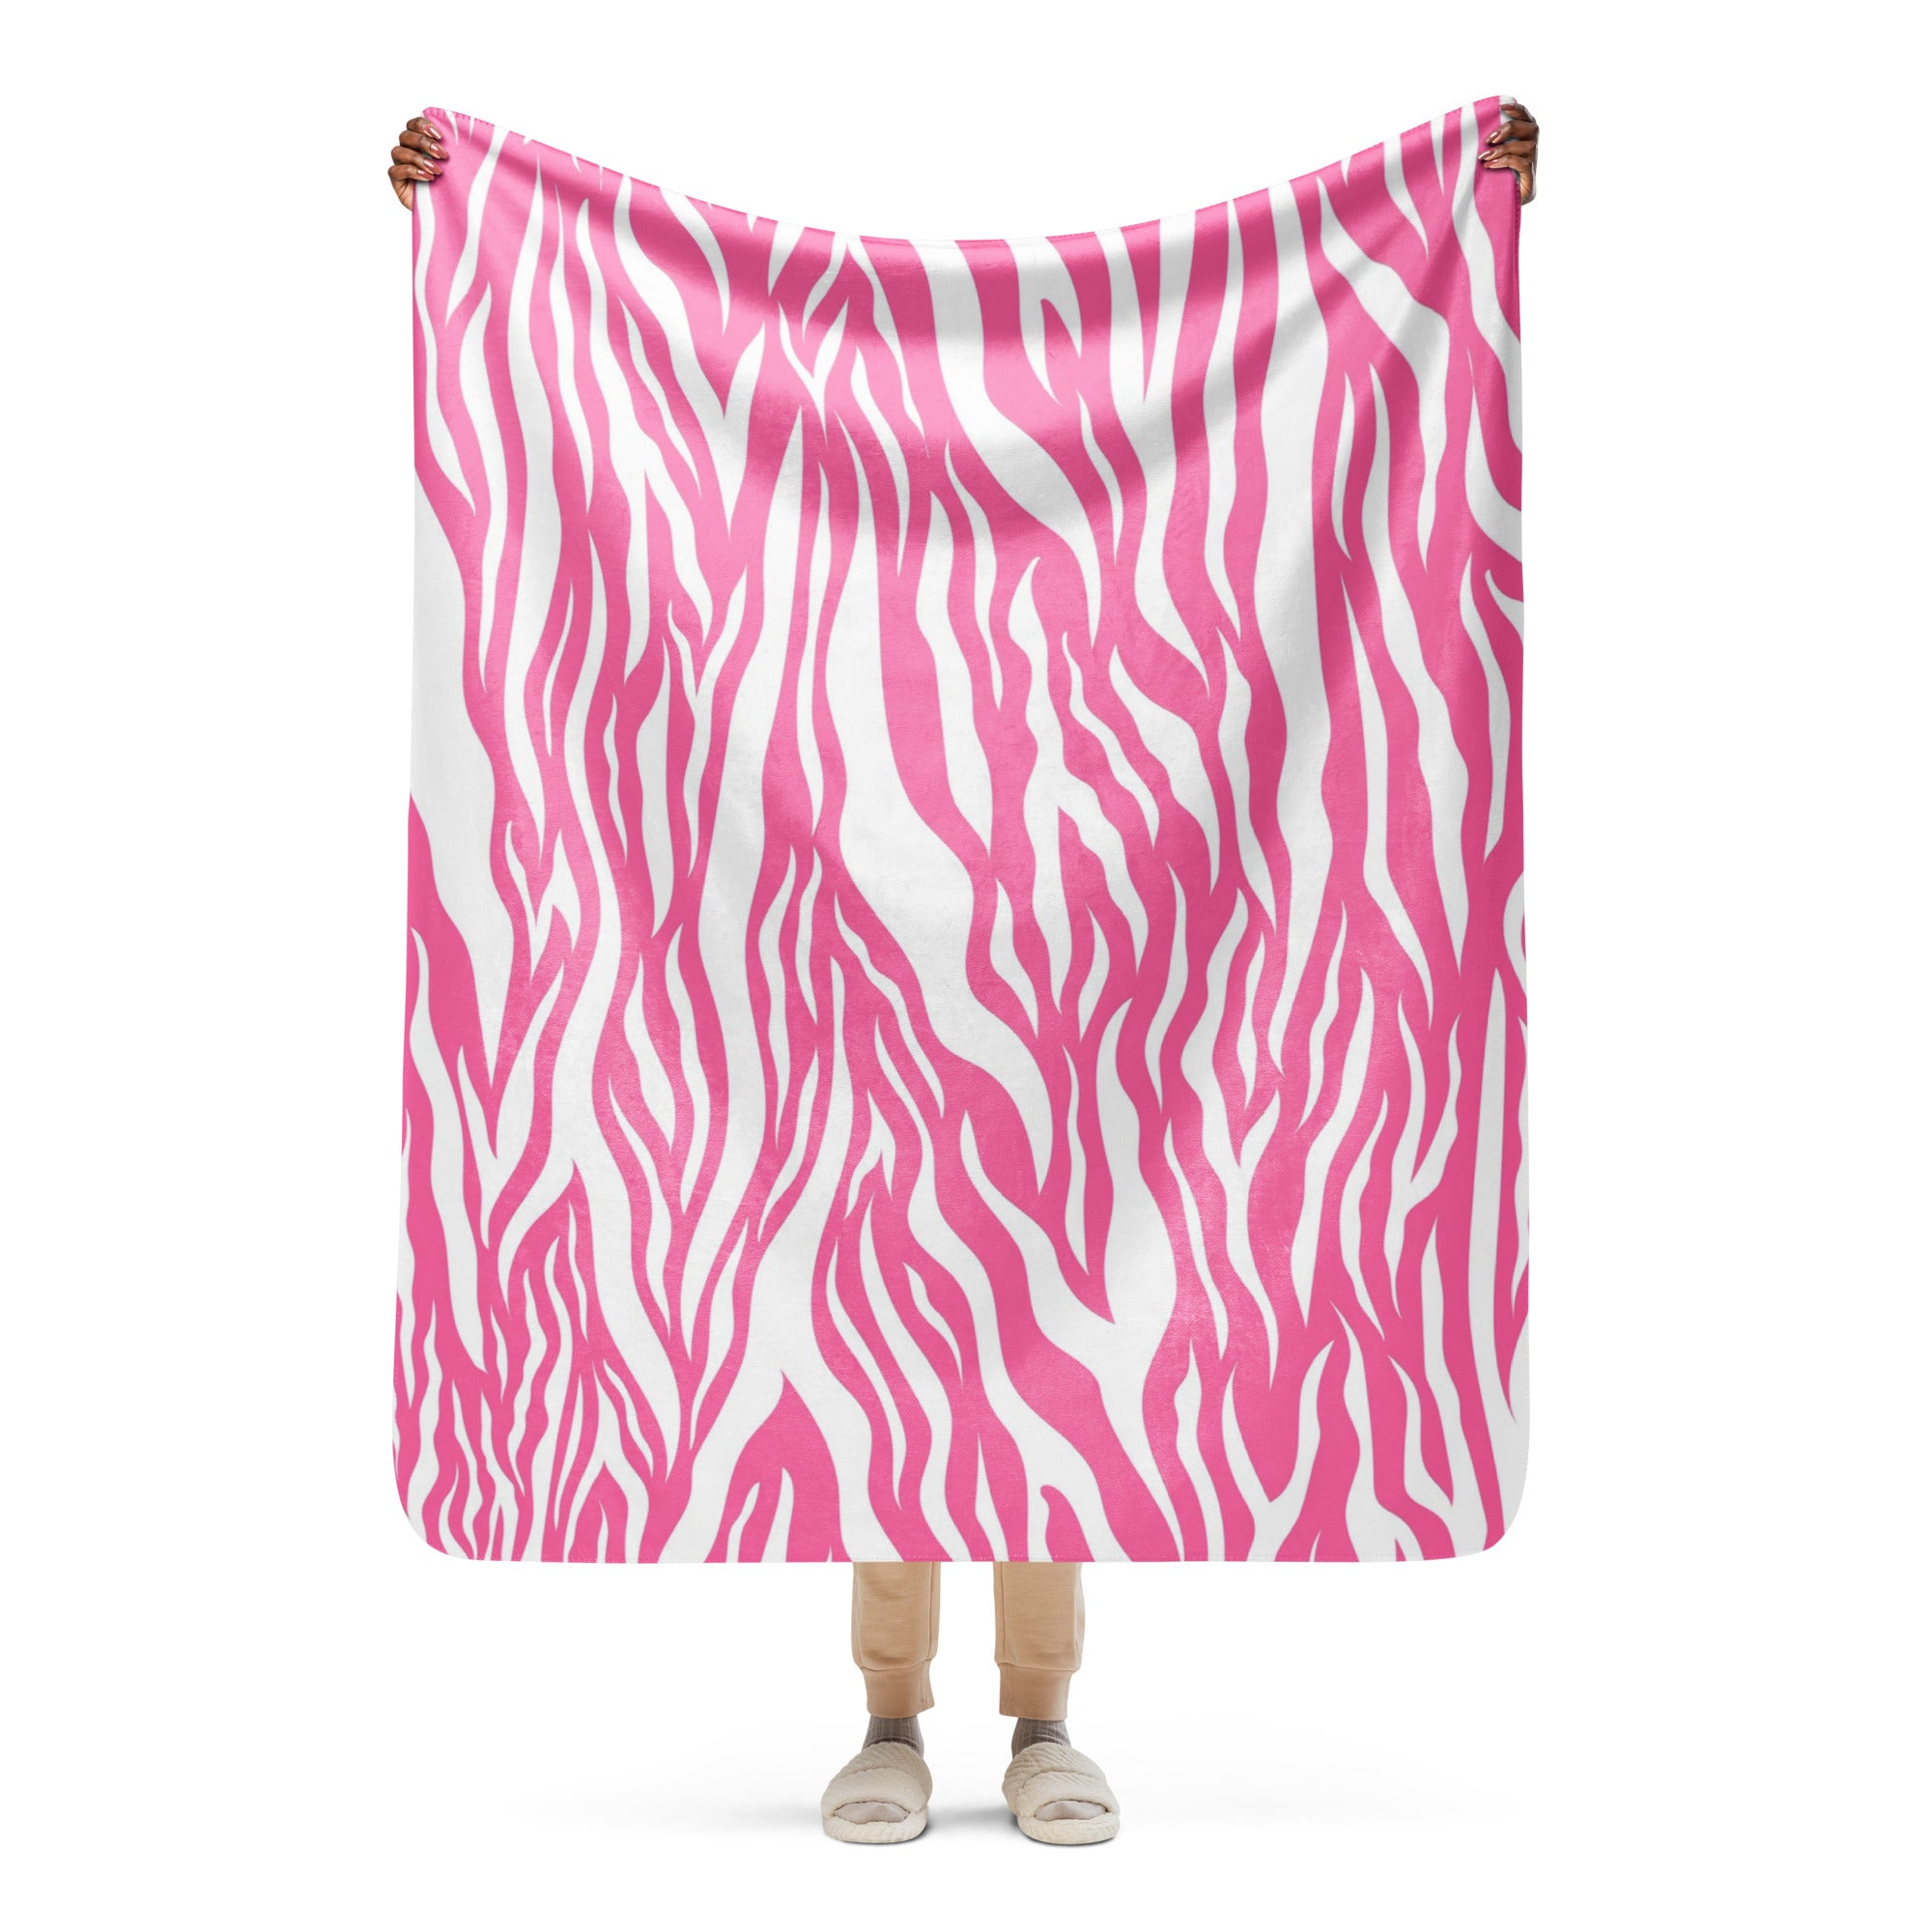 Pink and White Zebra Print Sherpa blanket